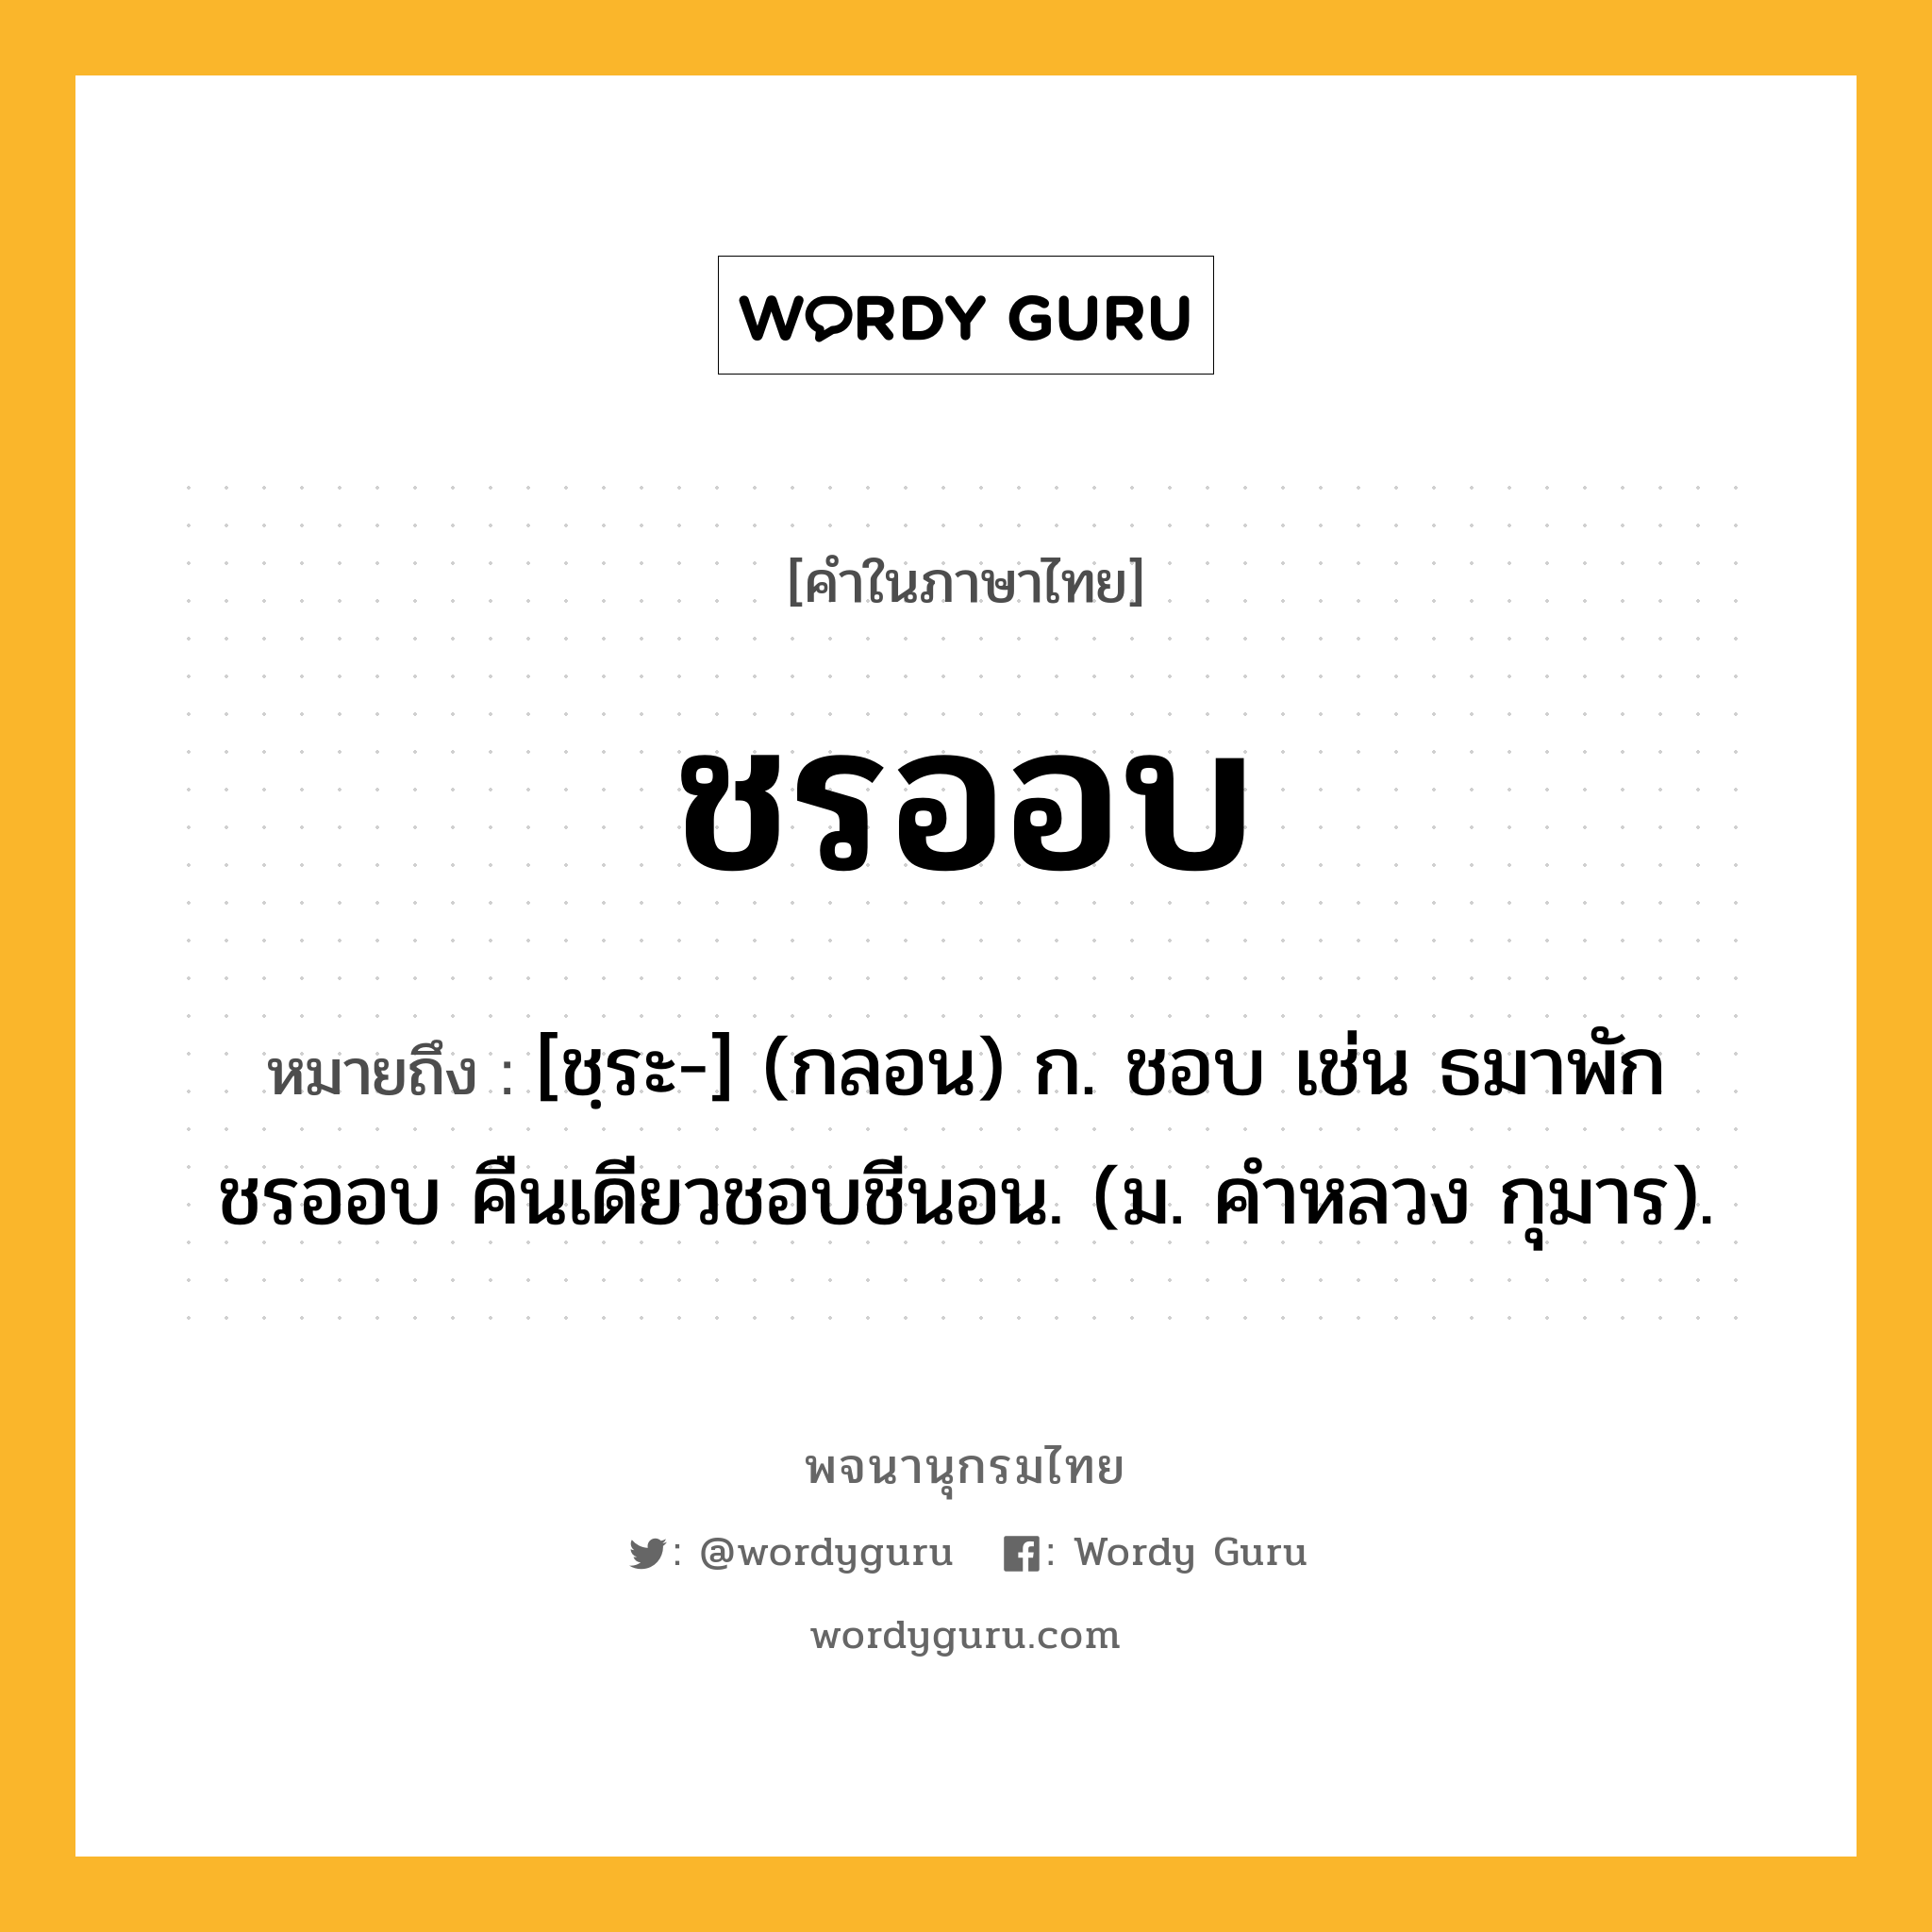 ชรออบ ความหมาย หมายถึงอะไร?, คำในภาษาไทย ชรออบ หมายถึง [ชฺระ-] (กลอน) ก. ชอบ เช่น ธมาพักชรออบ คืนเดียวชอบชีนอน. (ม. คําหลวง กุมาร).